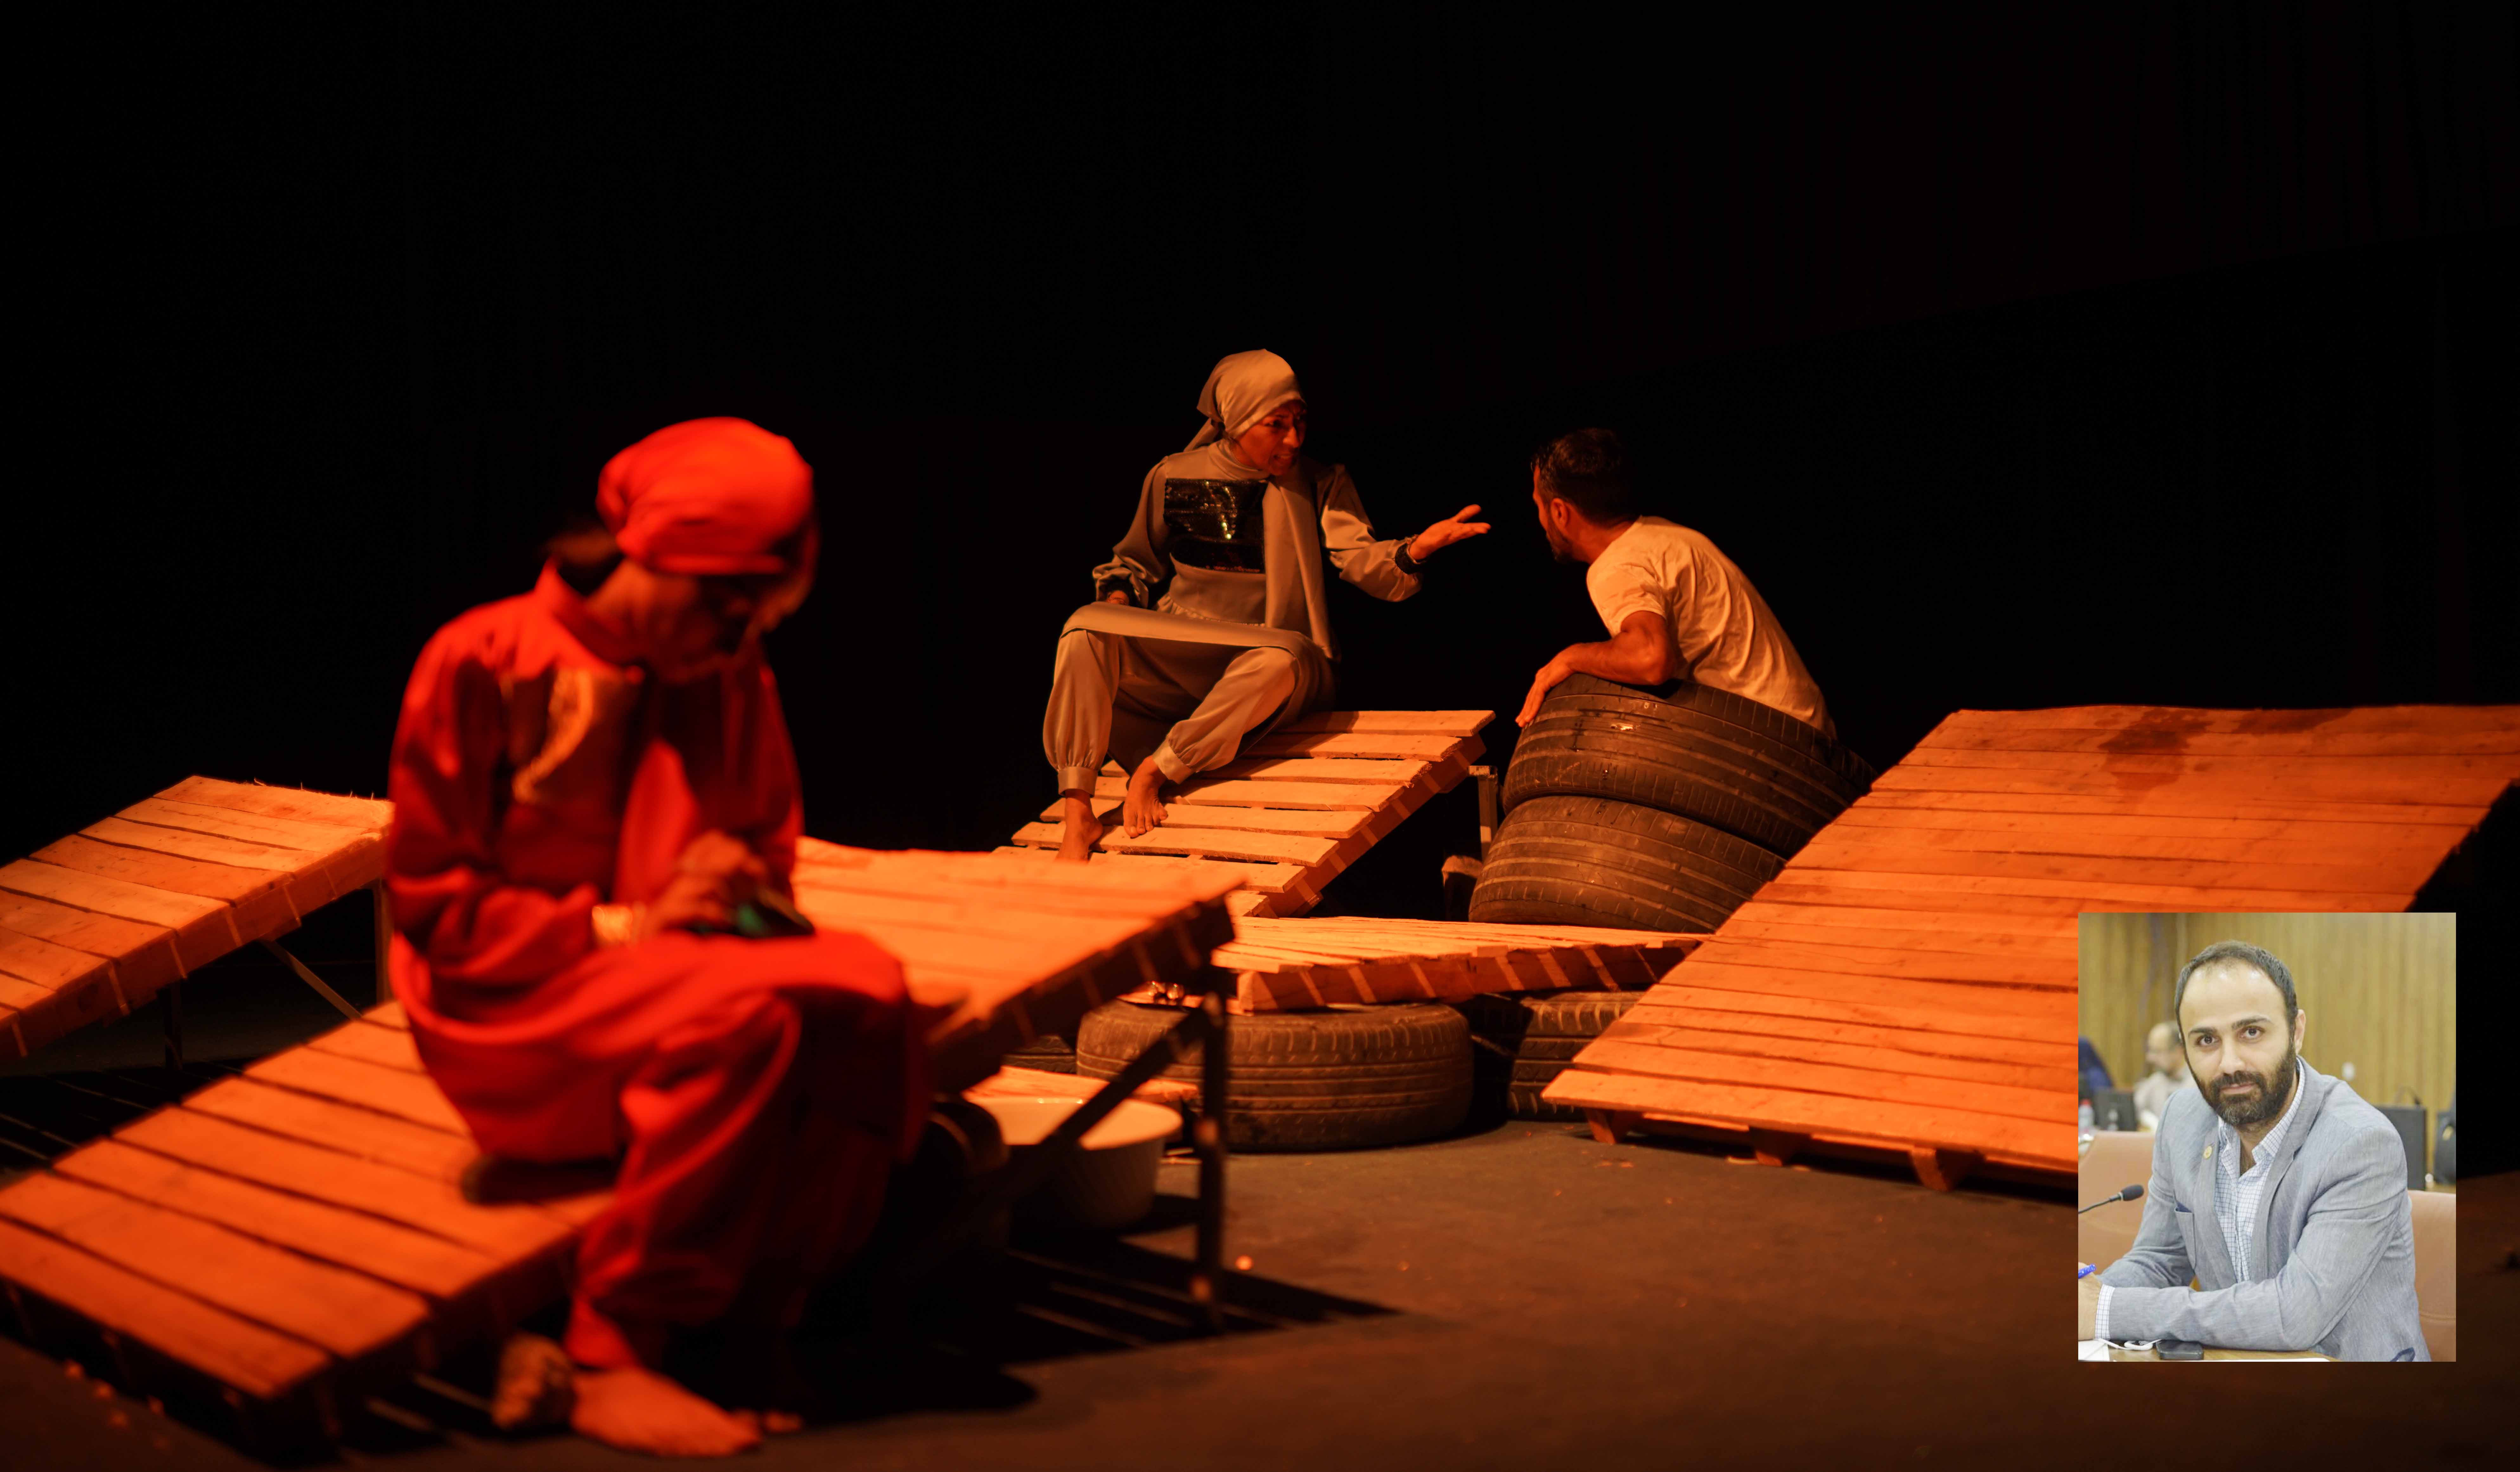 نقدی بر نمایش «چراغ » به کارگردانی حسین مسکینی

آموزش تئاتر یک رکن اصلی در همه ی هنرها و علوم و فنون است